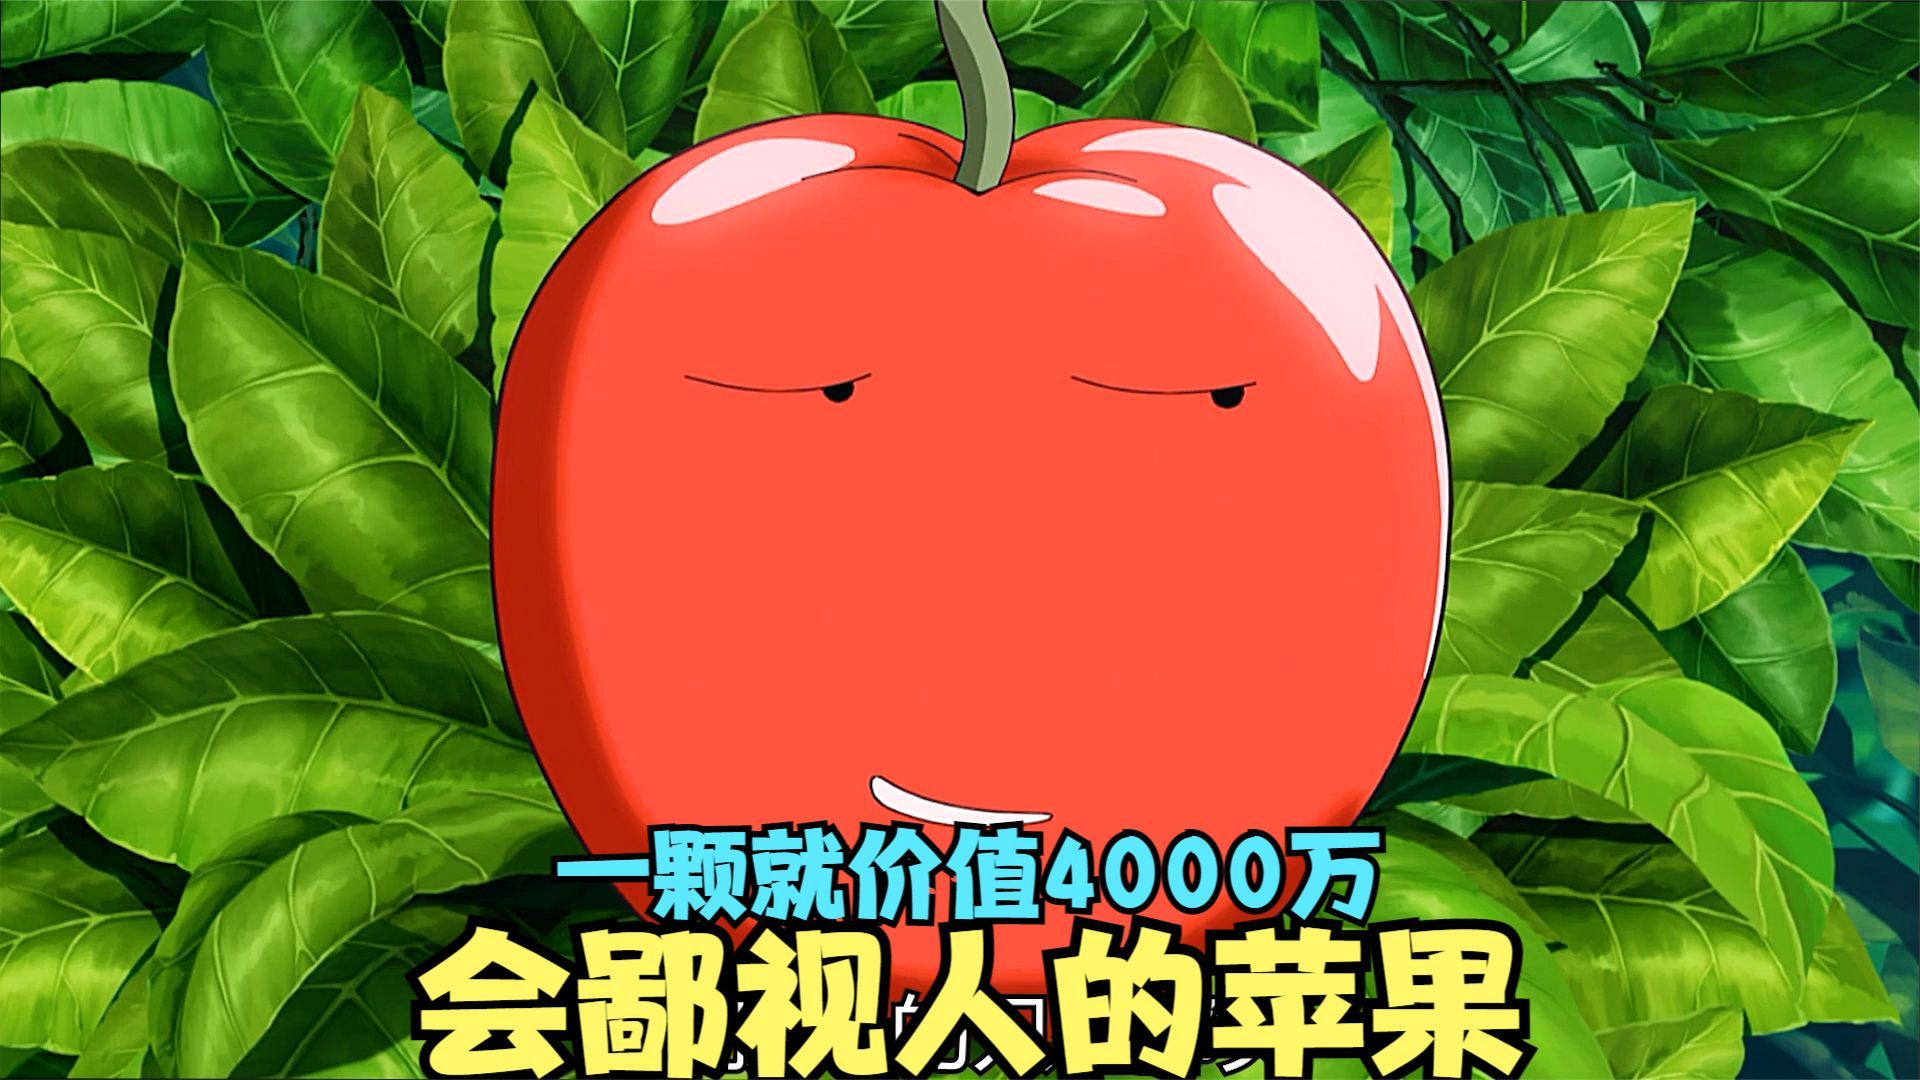 拥有人类表情的苹果，受到的惊吓越大，就会变的越美味